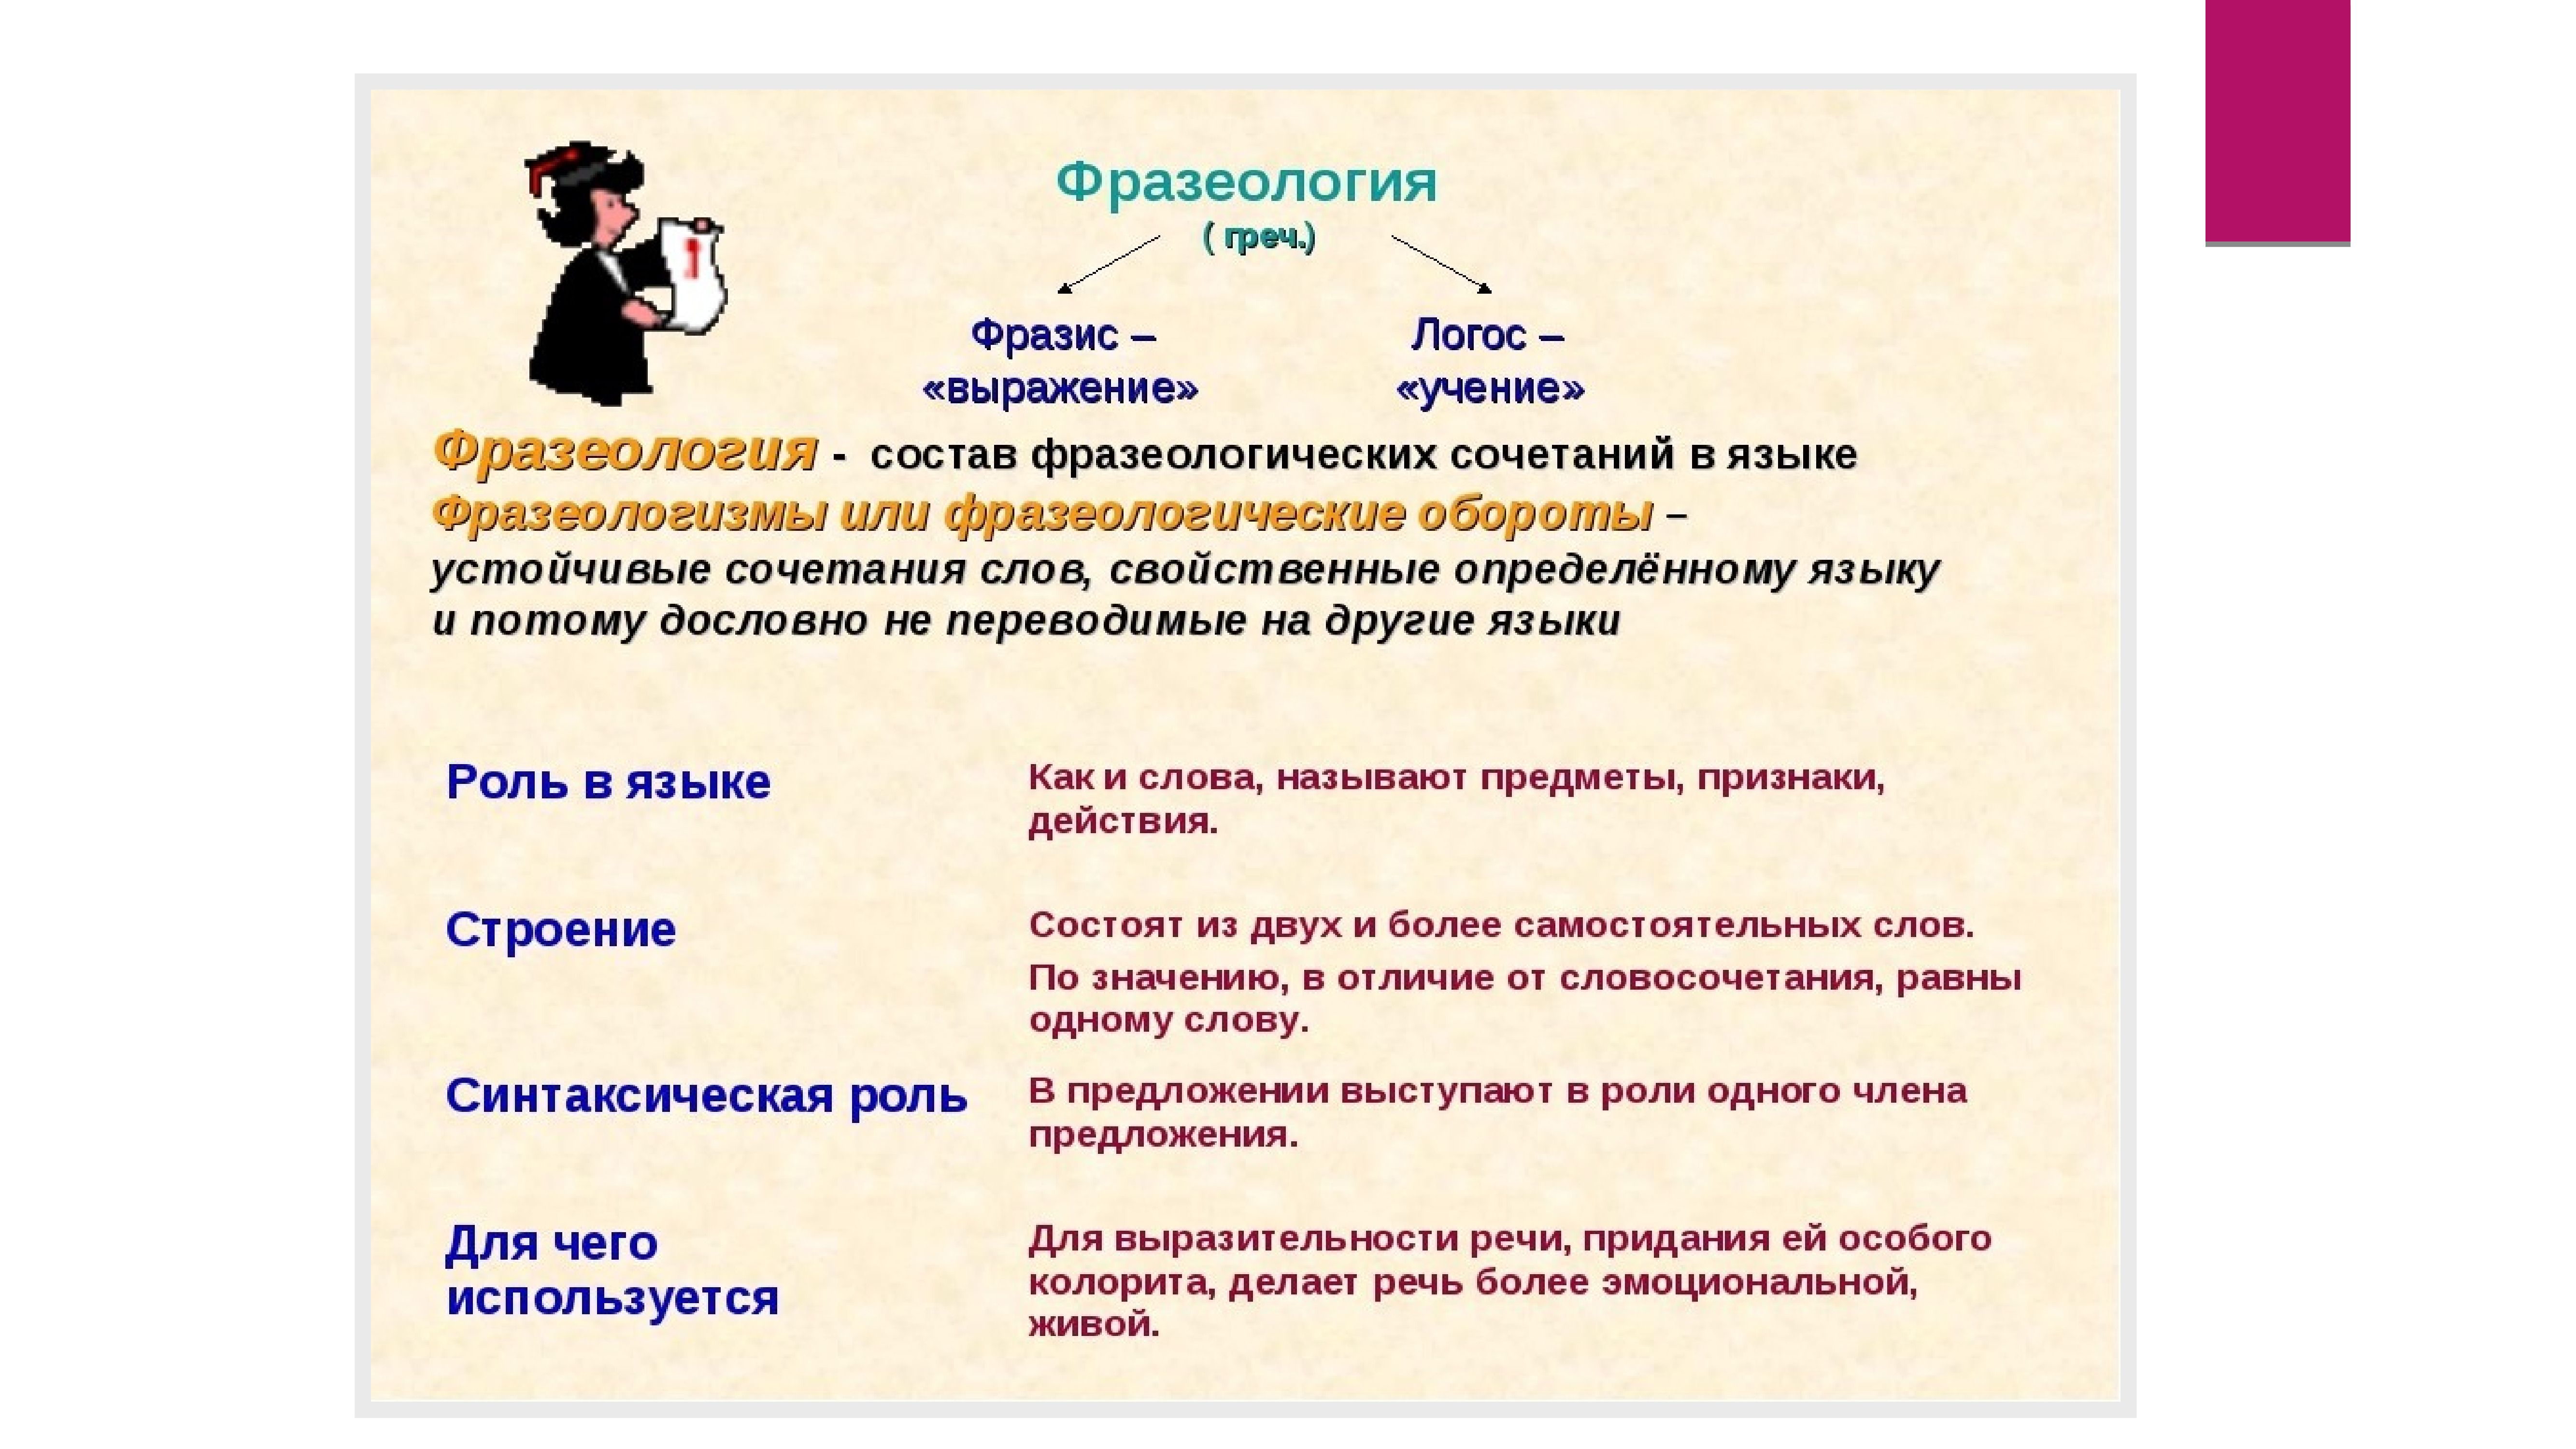 Определение выражения понимание человека. Фразеология и фразеологизмы. Фразеология это в русском языке. Понятие фразеологизма. Фразеологизмы в речи.